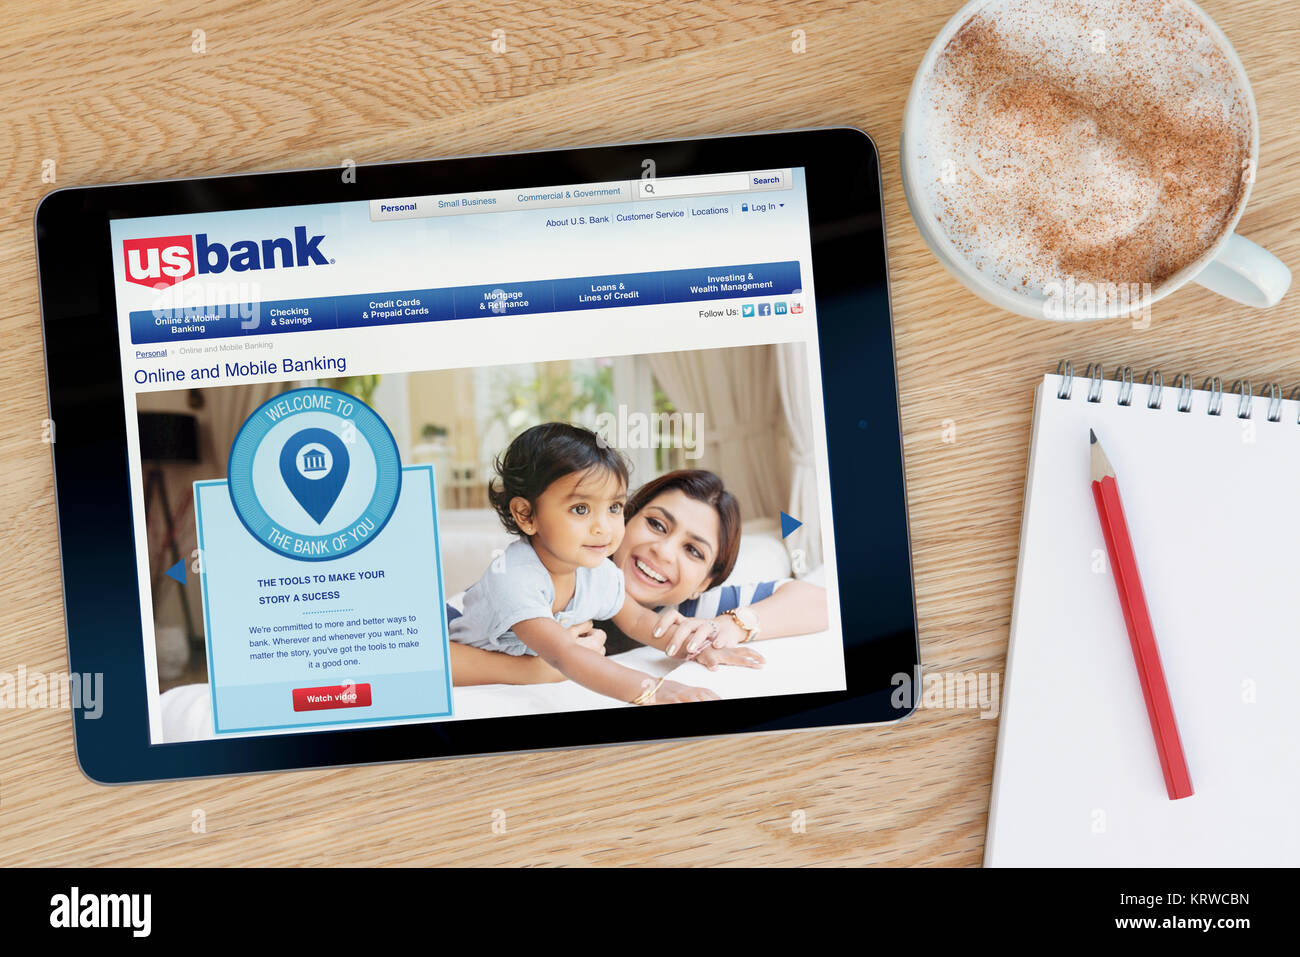 El banco estadounidense sitio web en un dispositivo tablet iPad que descansa sobre una mesa de madera junto a un bloc de notas y lápiz y una taza de café (Editorial) Foto de stock